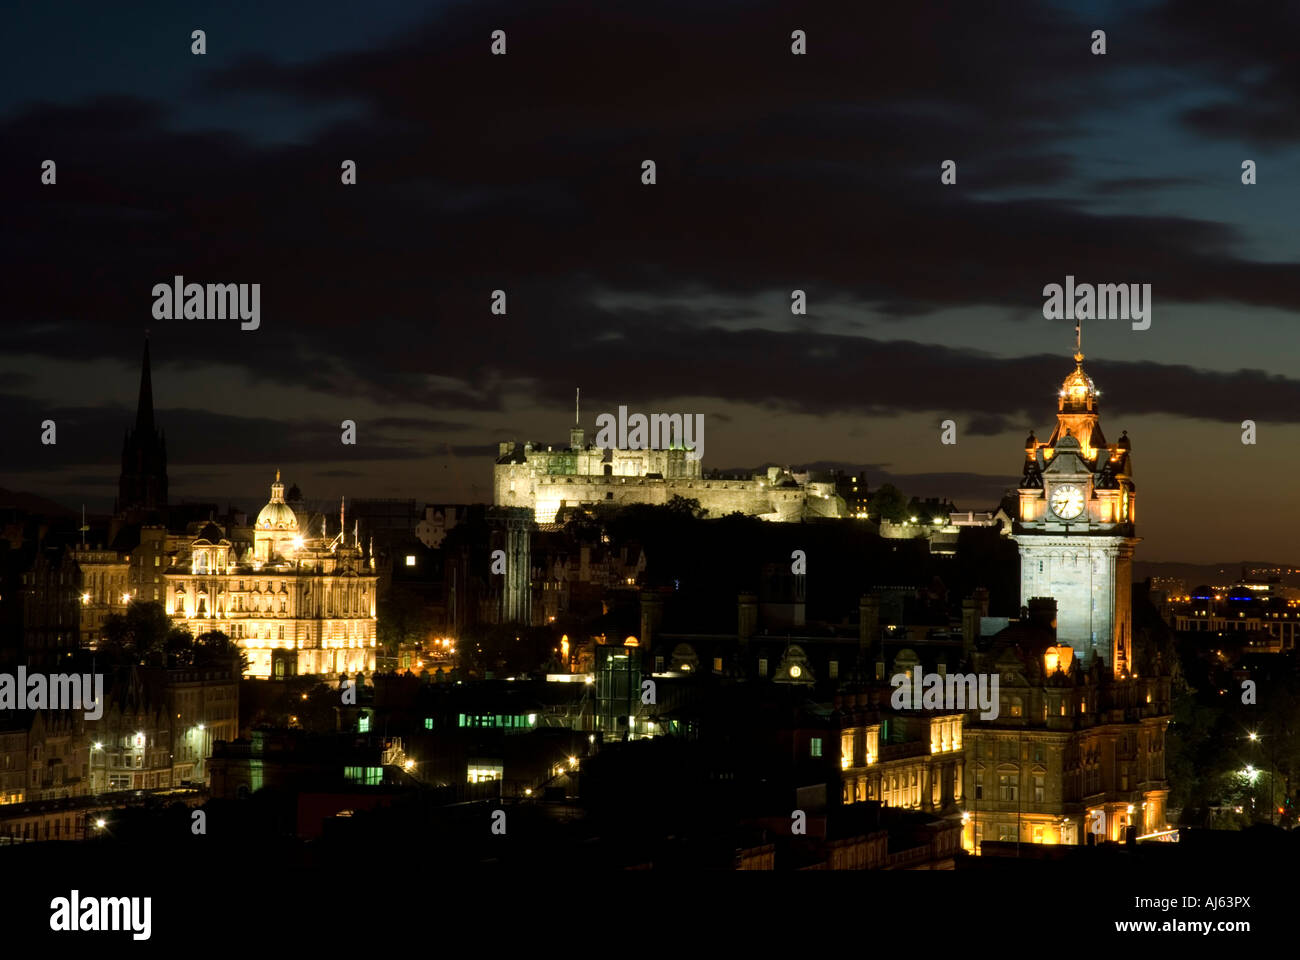 Un paisaje urbano de Edimburgo de noche mostrando el Castillo de Edimburgo el Hotel Balmoral Clock Tower y el Bank of Scotland Oficina principal Foto de stock